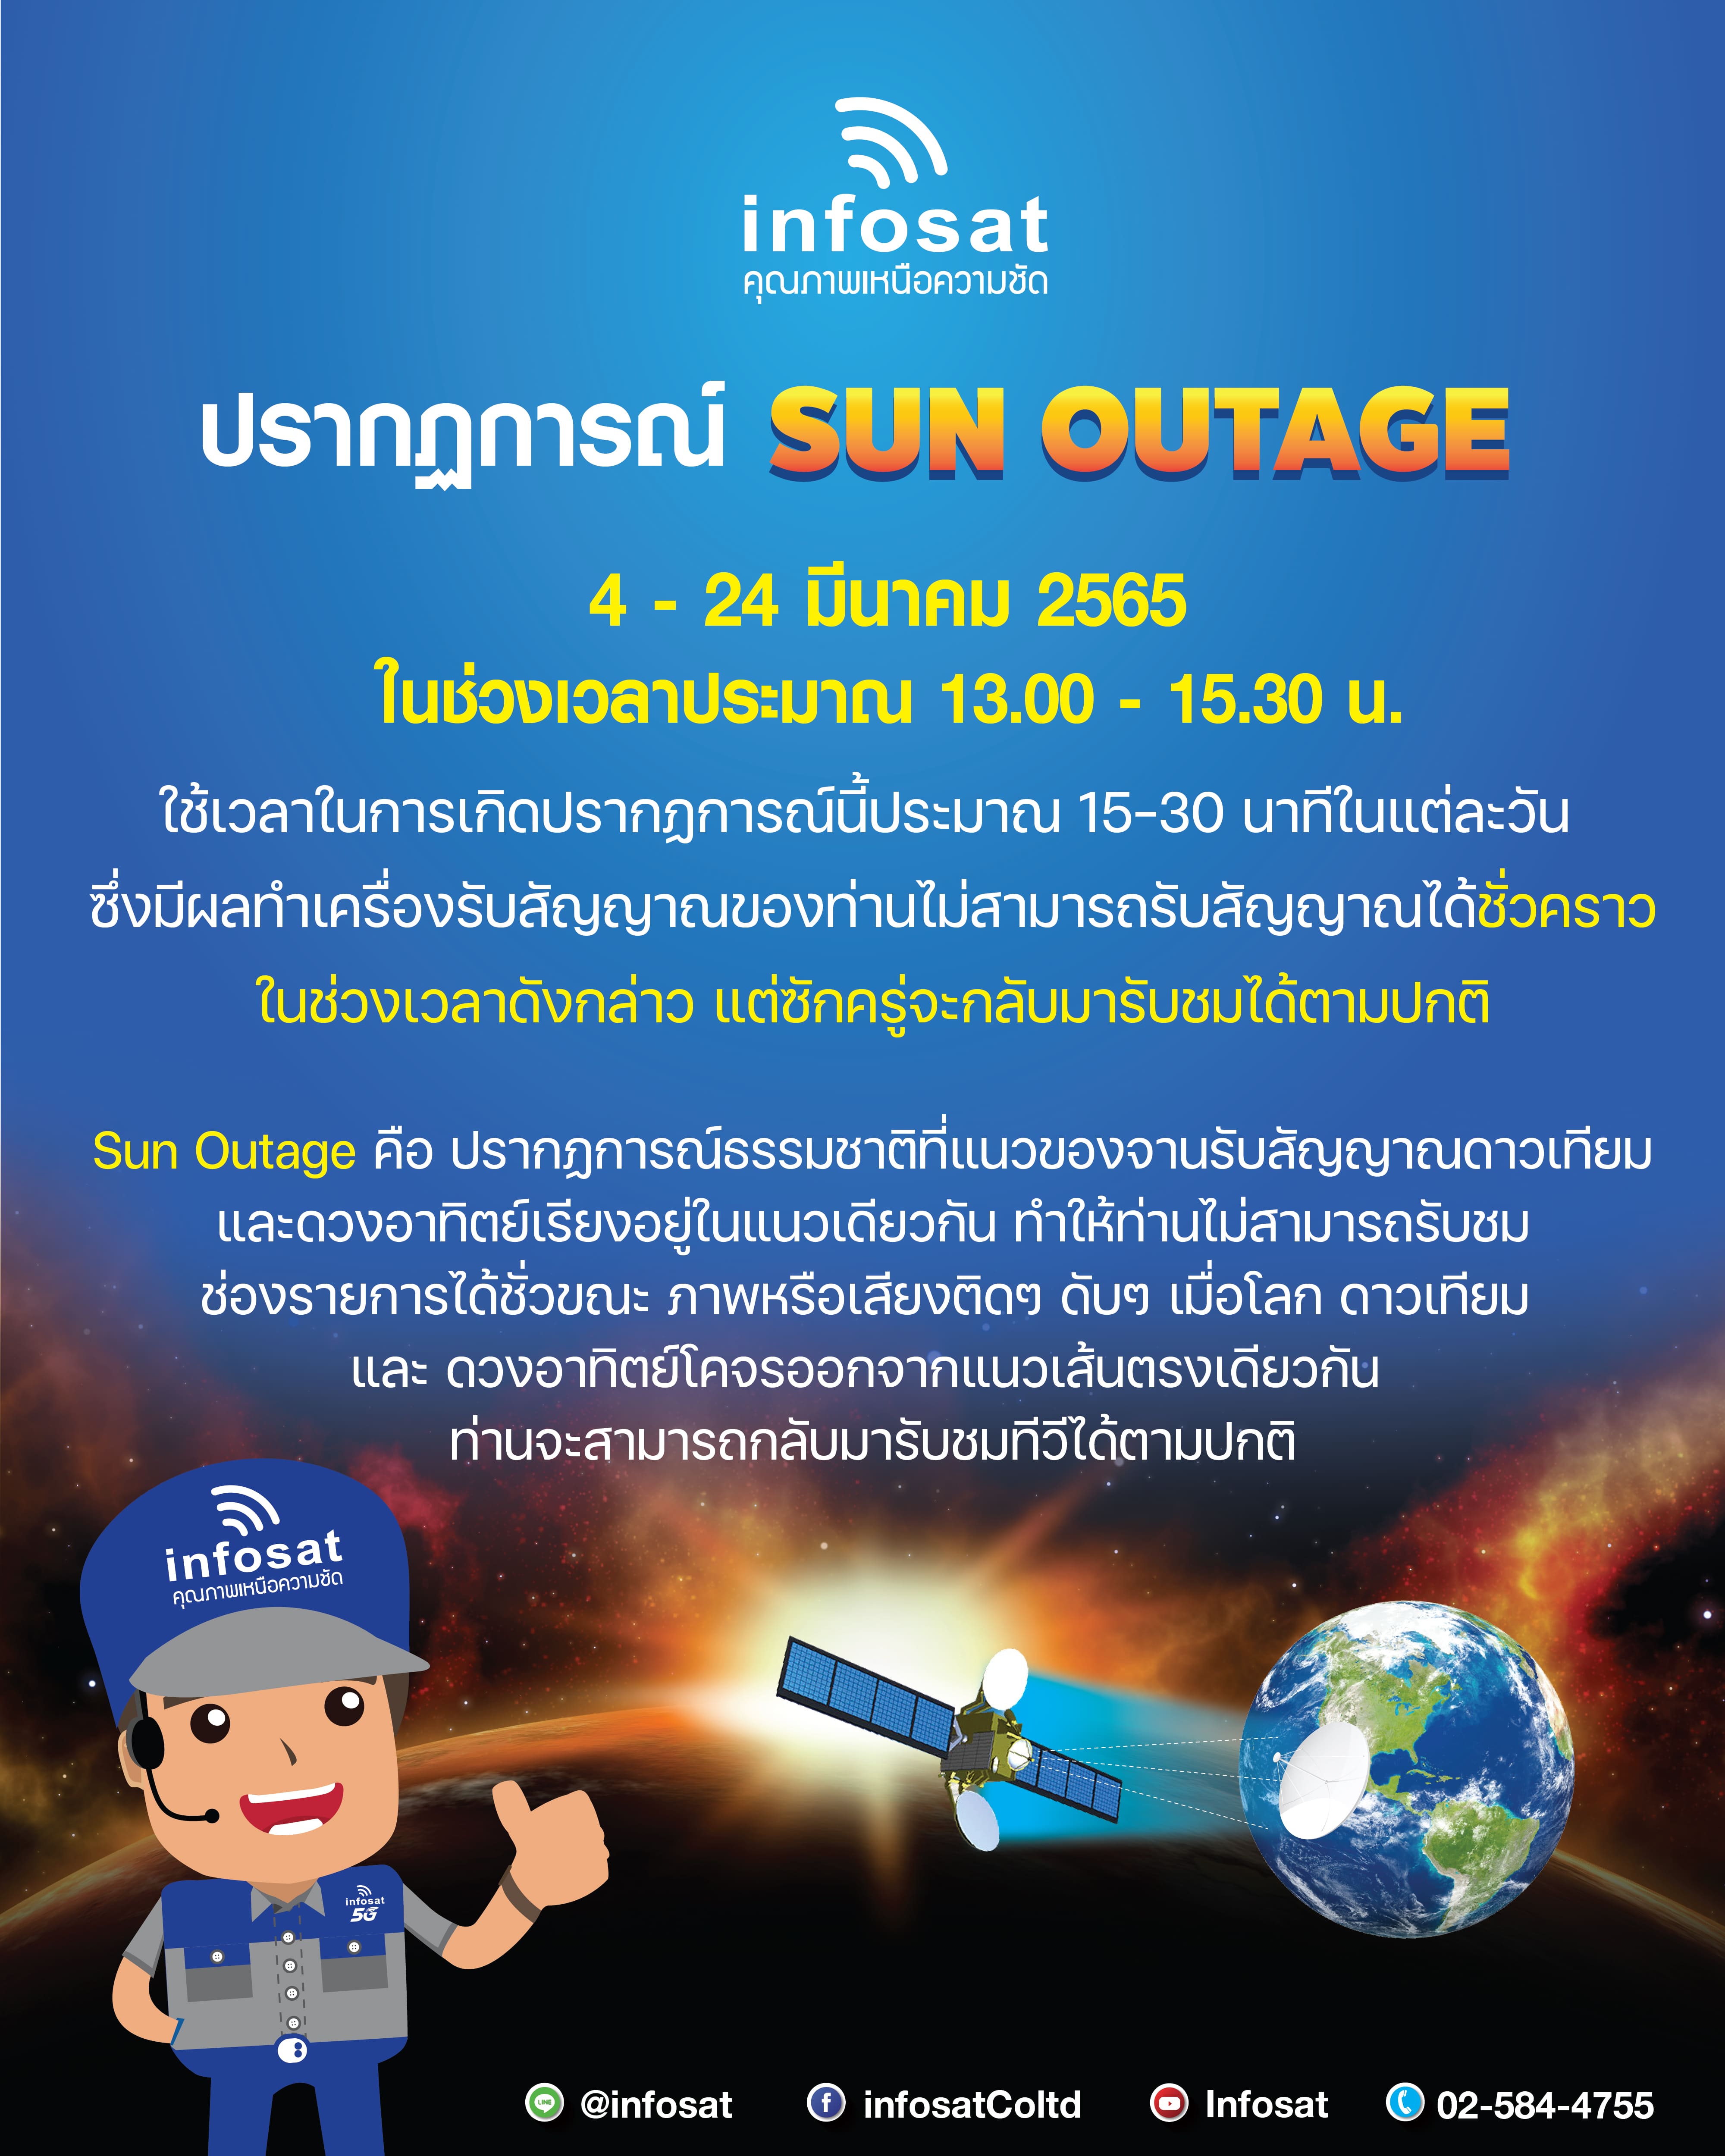 ปรากฎการณ์ Sun Outage 4-24 มีนาคม 2565